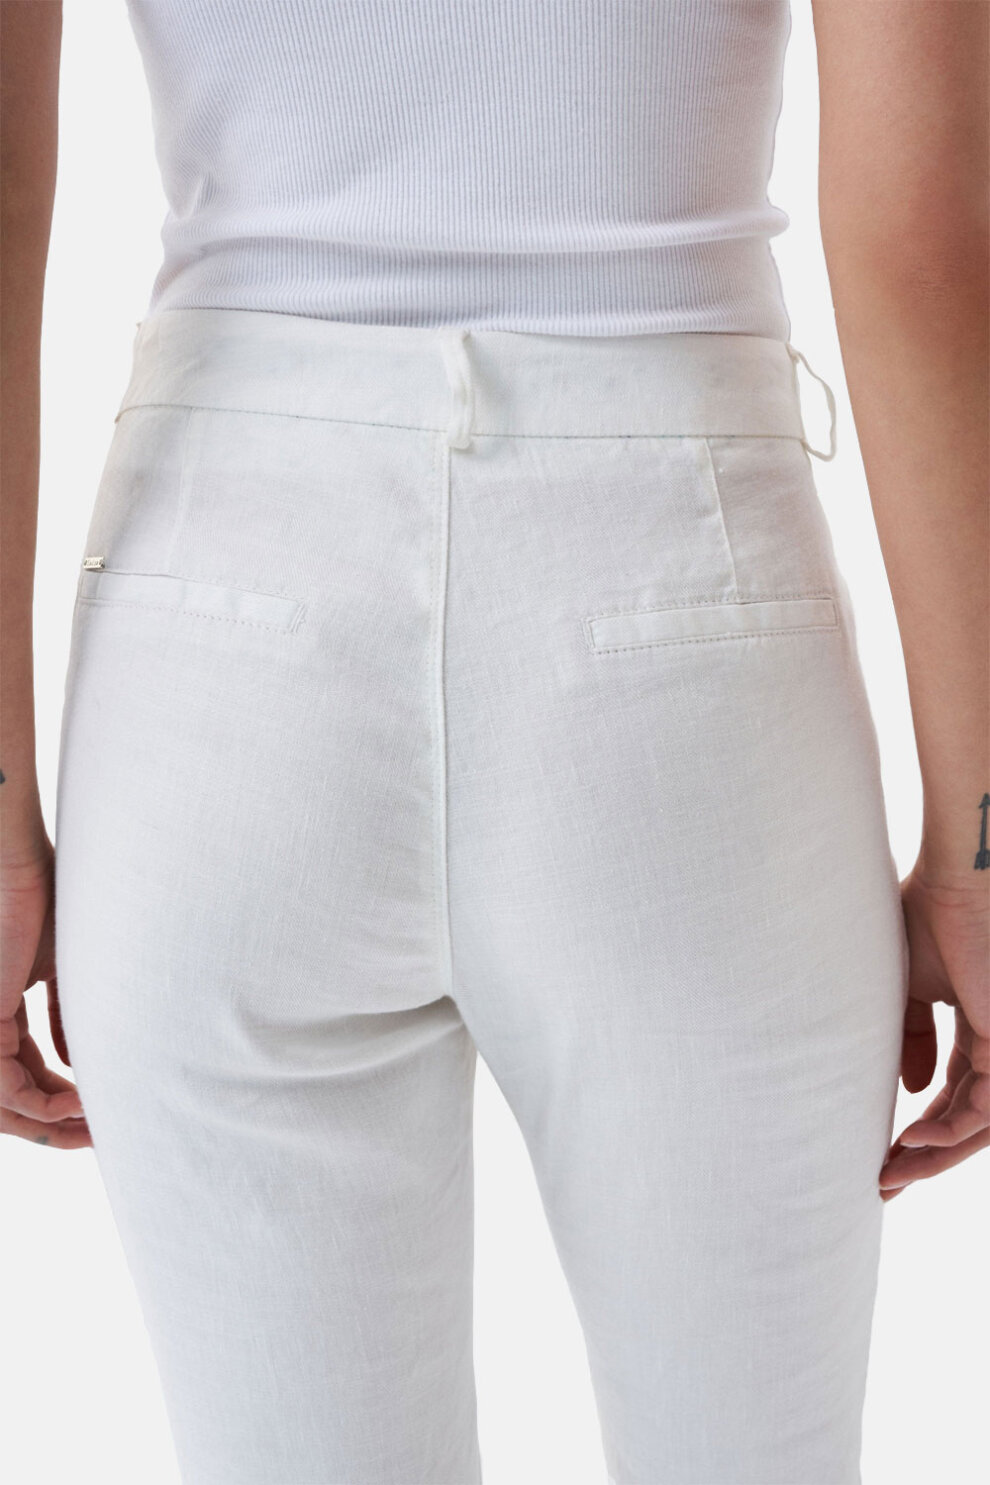 ŽENE - Hlače - Salsa lanene chino hlače - Duge hlače - Bijela